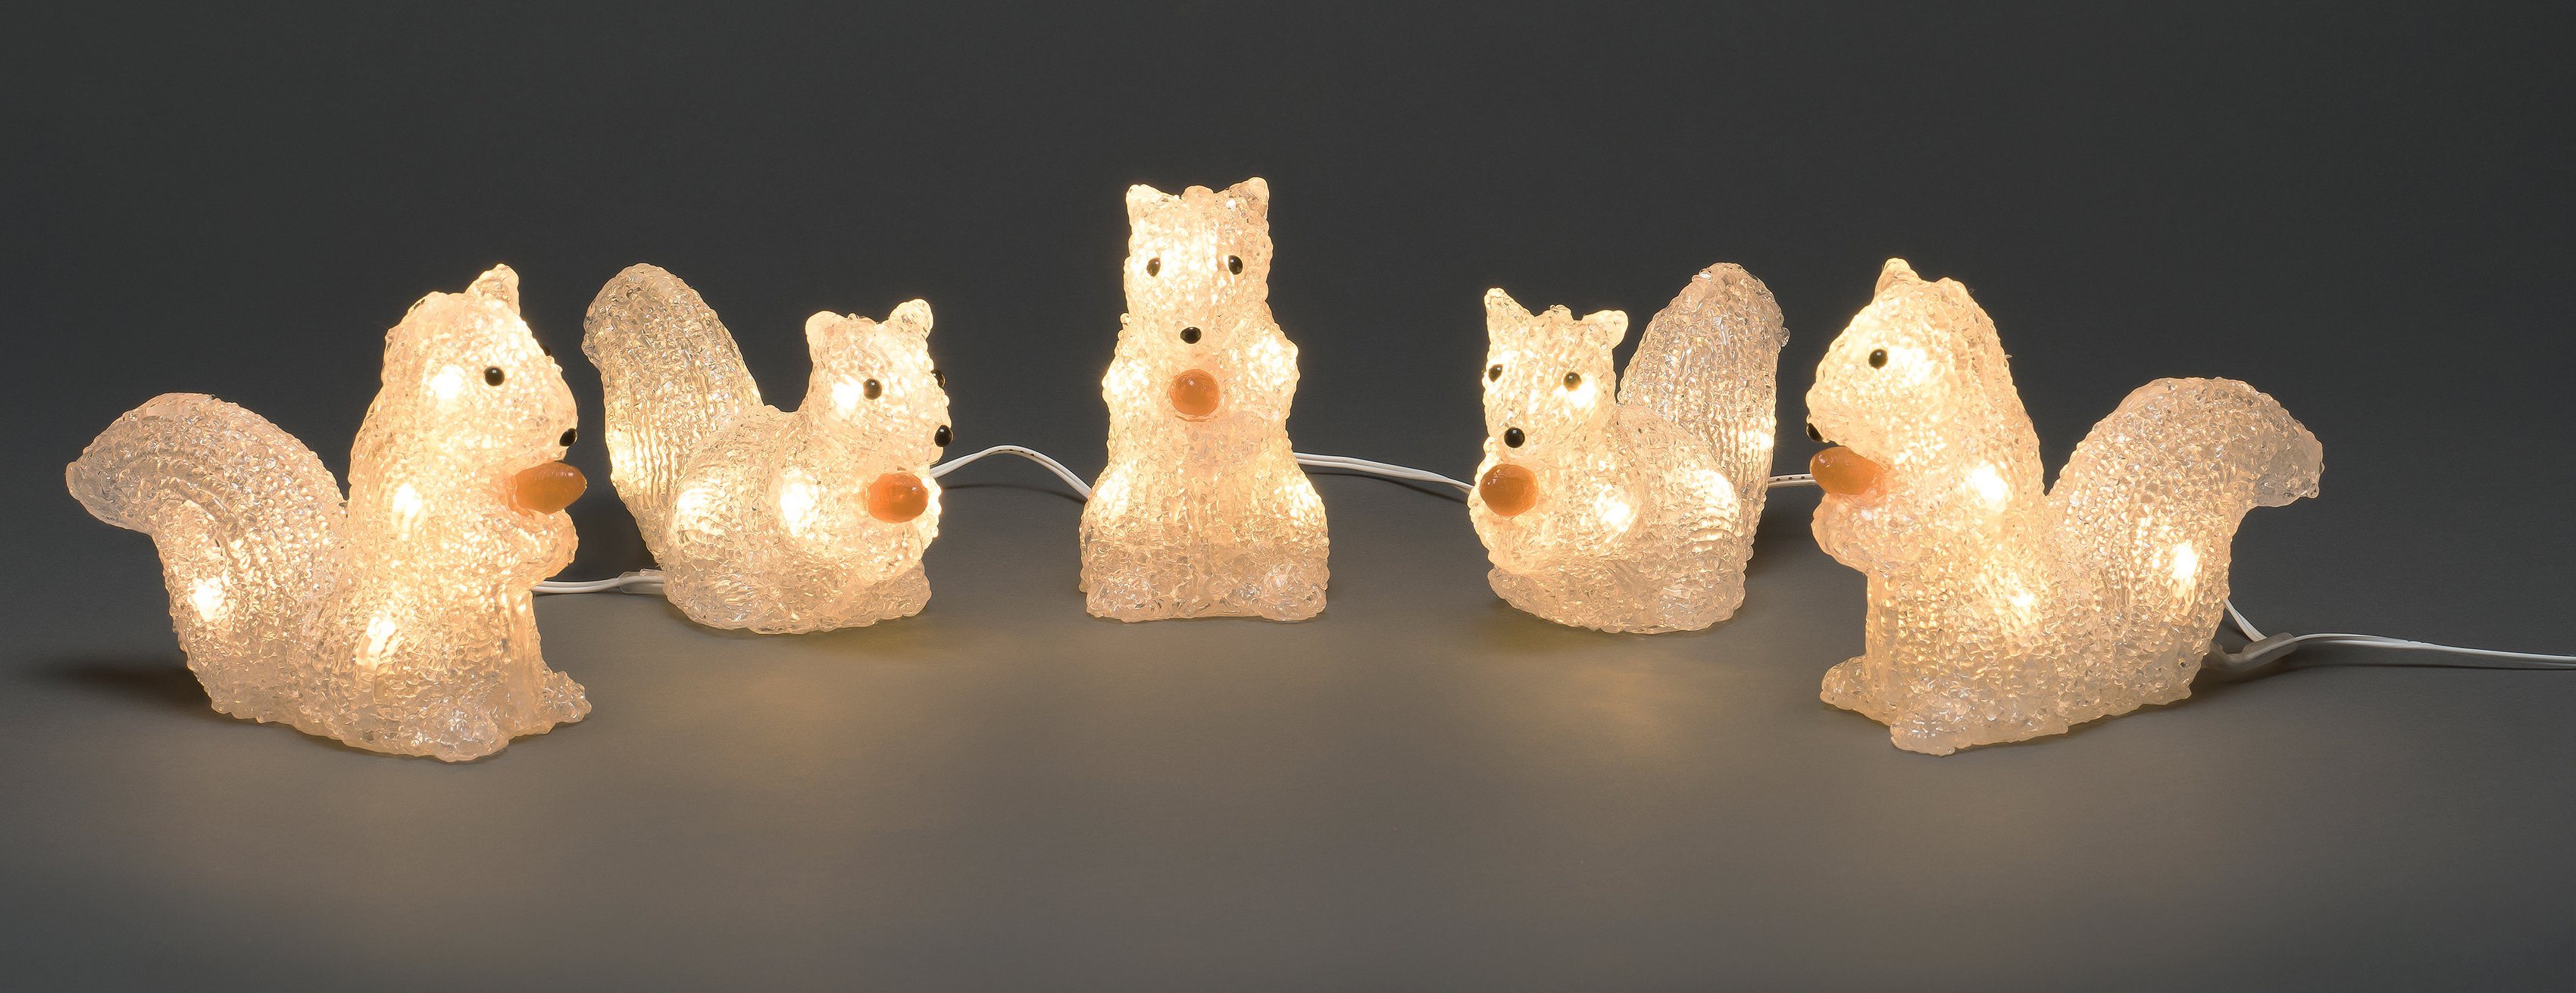 40 LED-Lichterkette mit Eichhörnchen, warmweissen KONSTSMIDE Weihnachtsdeko aussen, Dioden